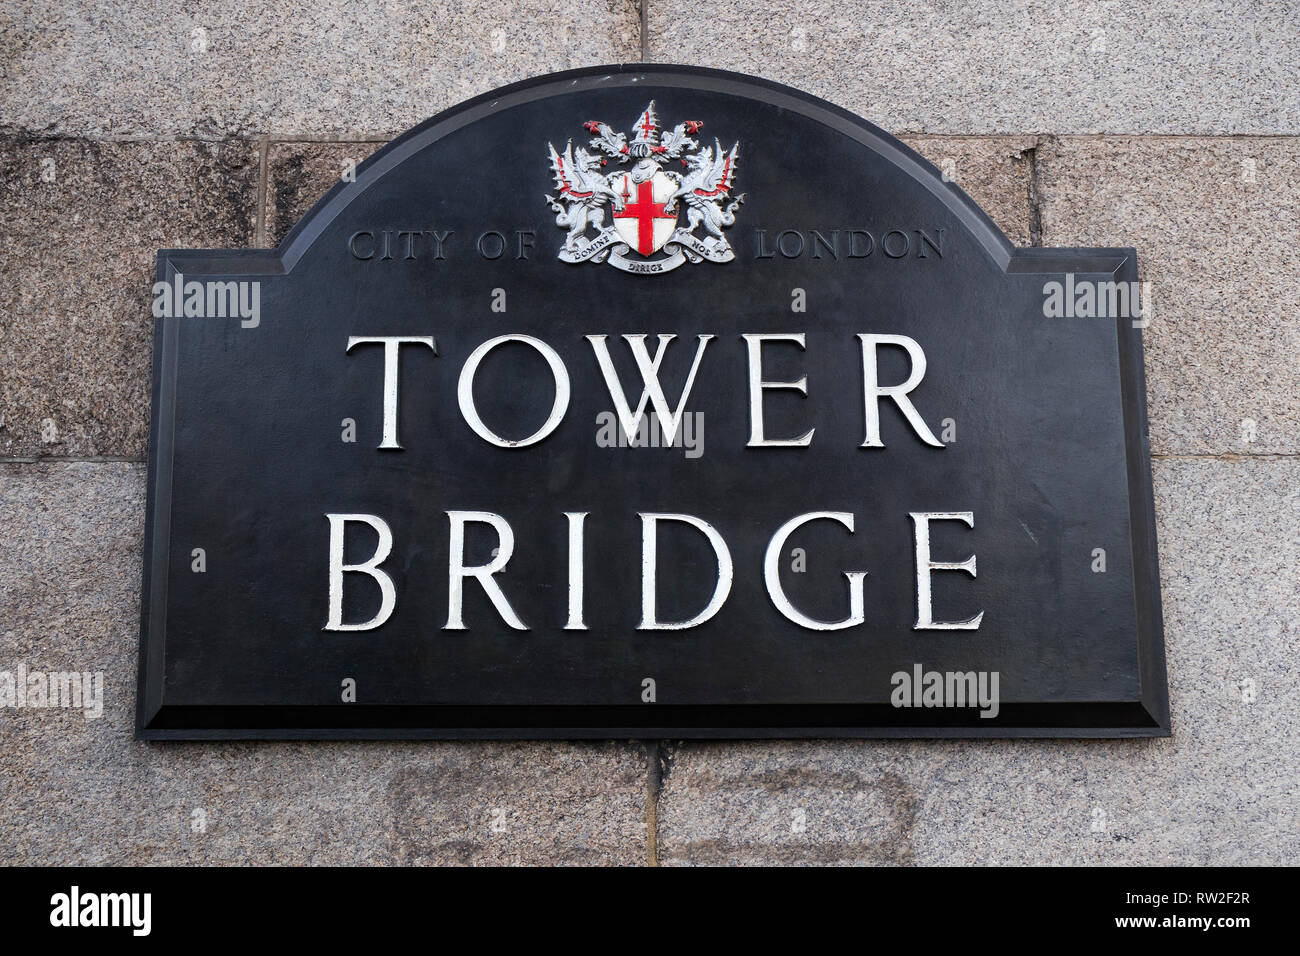 London, England - 28. Februar 2019: Das Schild für die Tower Bridge in London. Stockfoto